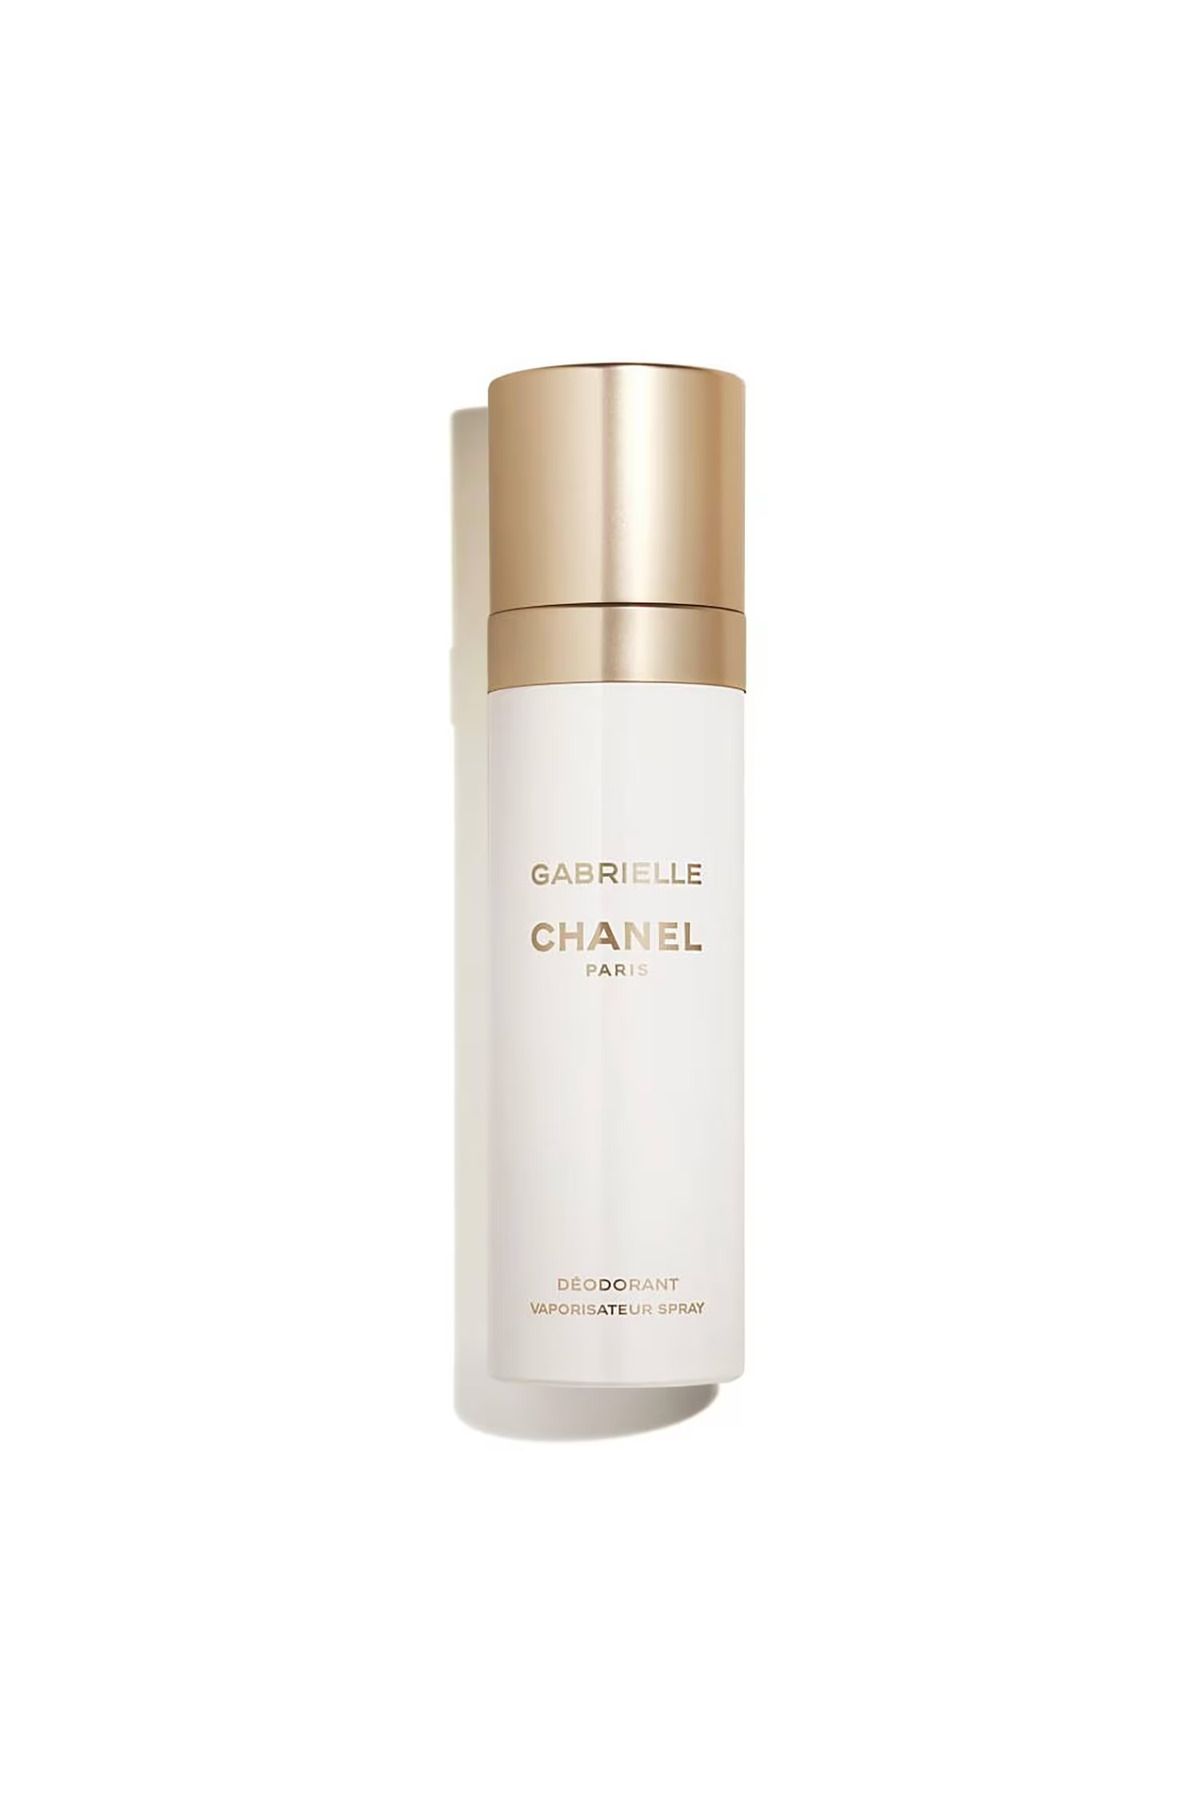 Chanel GABRIELLE CHANEL Deodorant-100ml